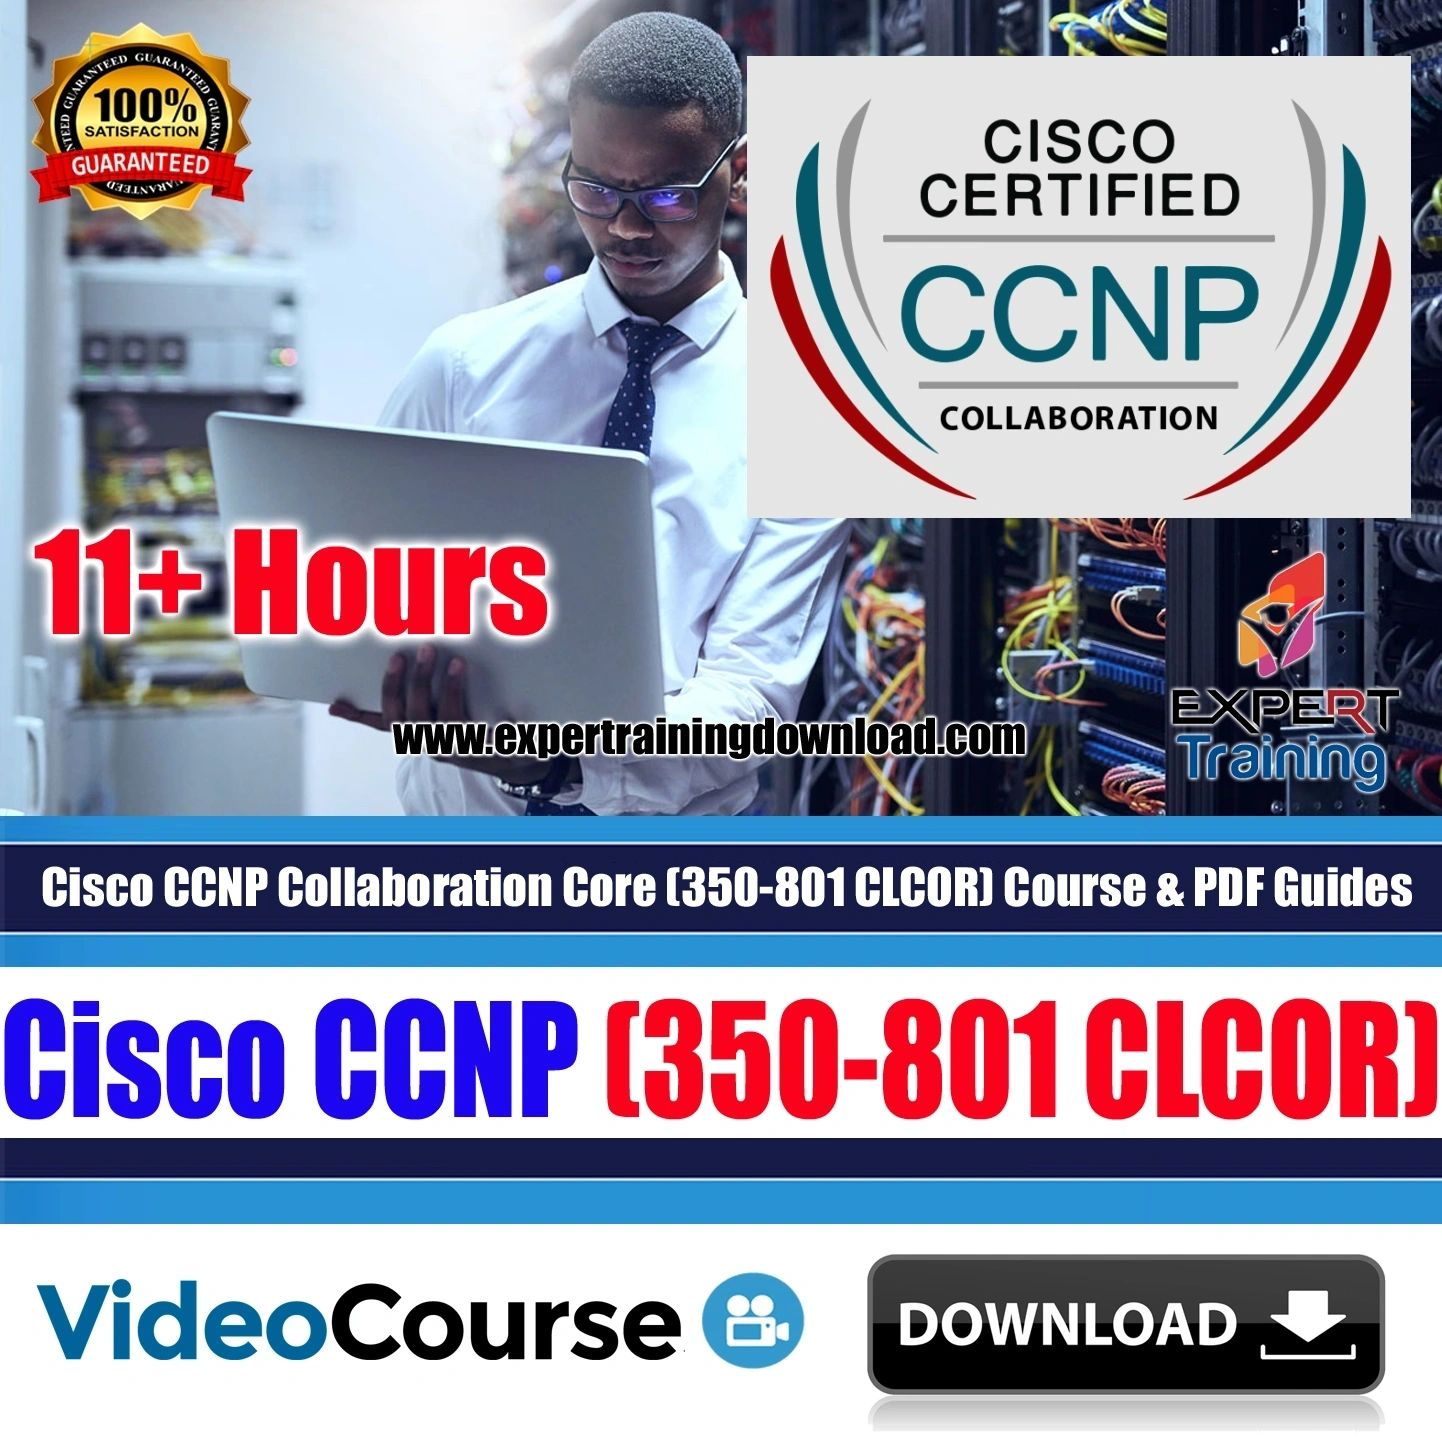 Cisco CCNP Collaboration Core (350-801 CLCOR) 11+ Hrs Course & PDF Guides